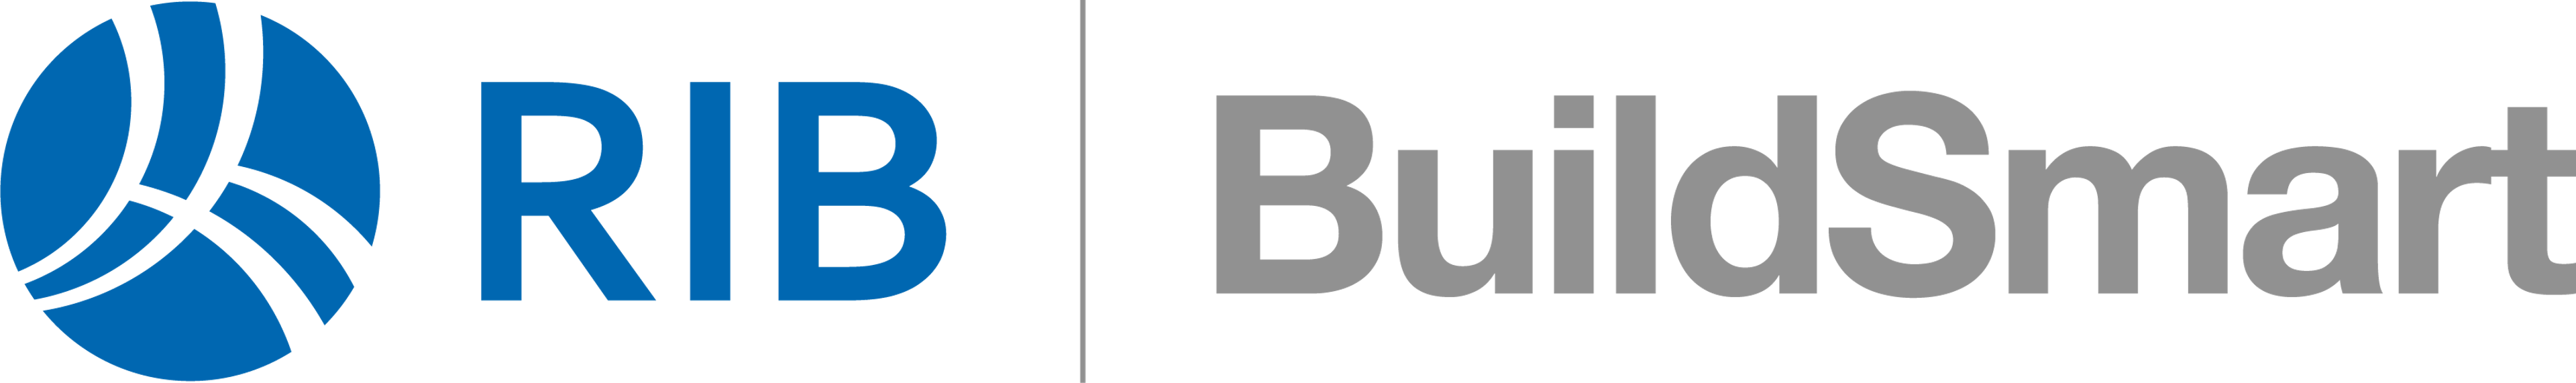 RIB BuildSmart Logo